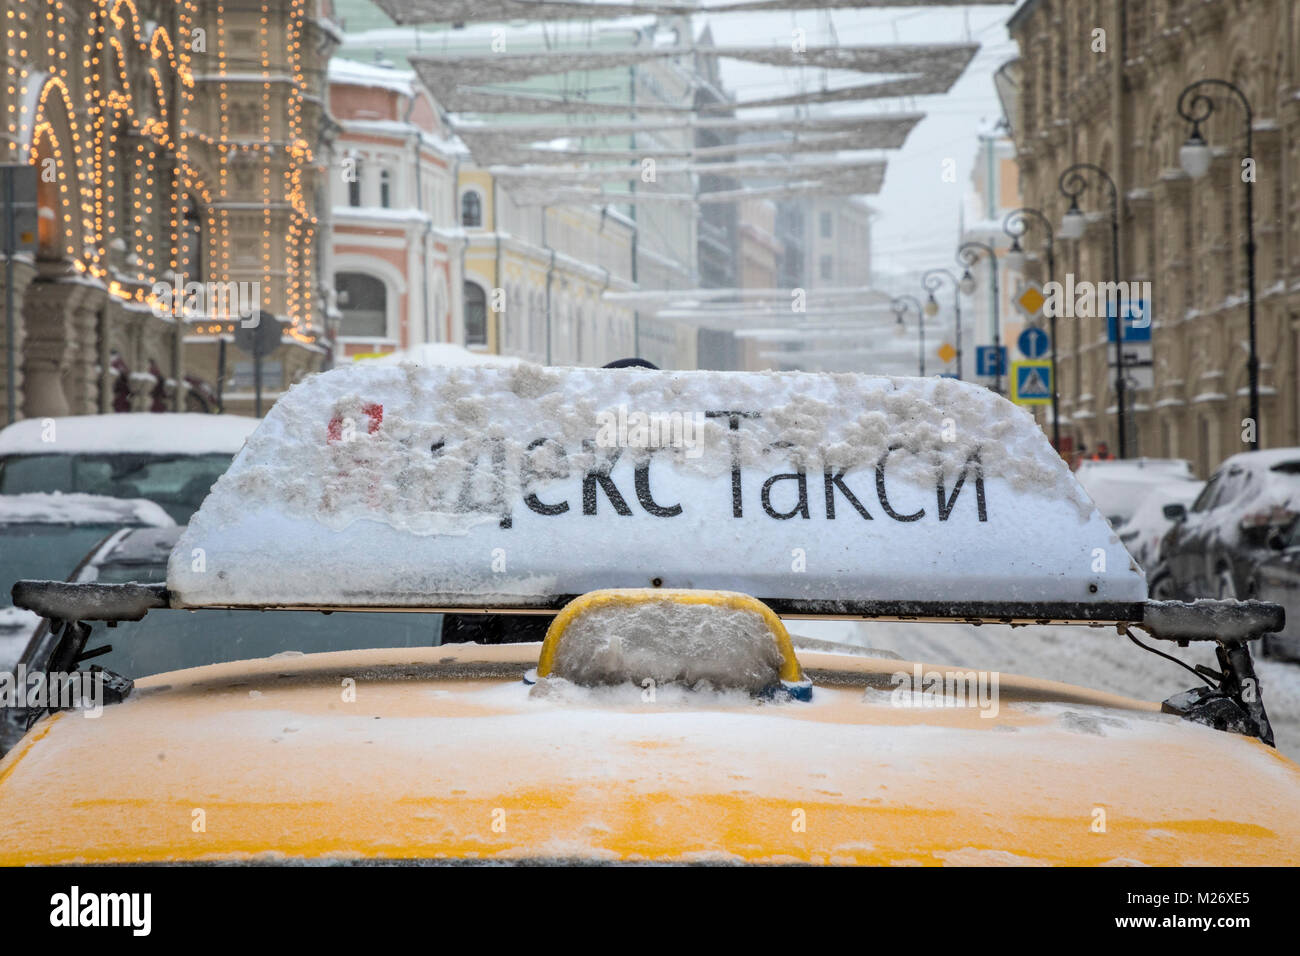 Taxi jaune avec des bannières 'TAXI' sur un Yandex toit d'une voiture en attendant le passager au magasin GUM durant une chute de neige dans la région de Moscou, Russie Banque D'Images